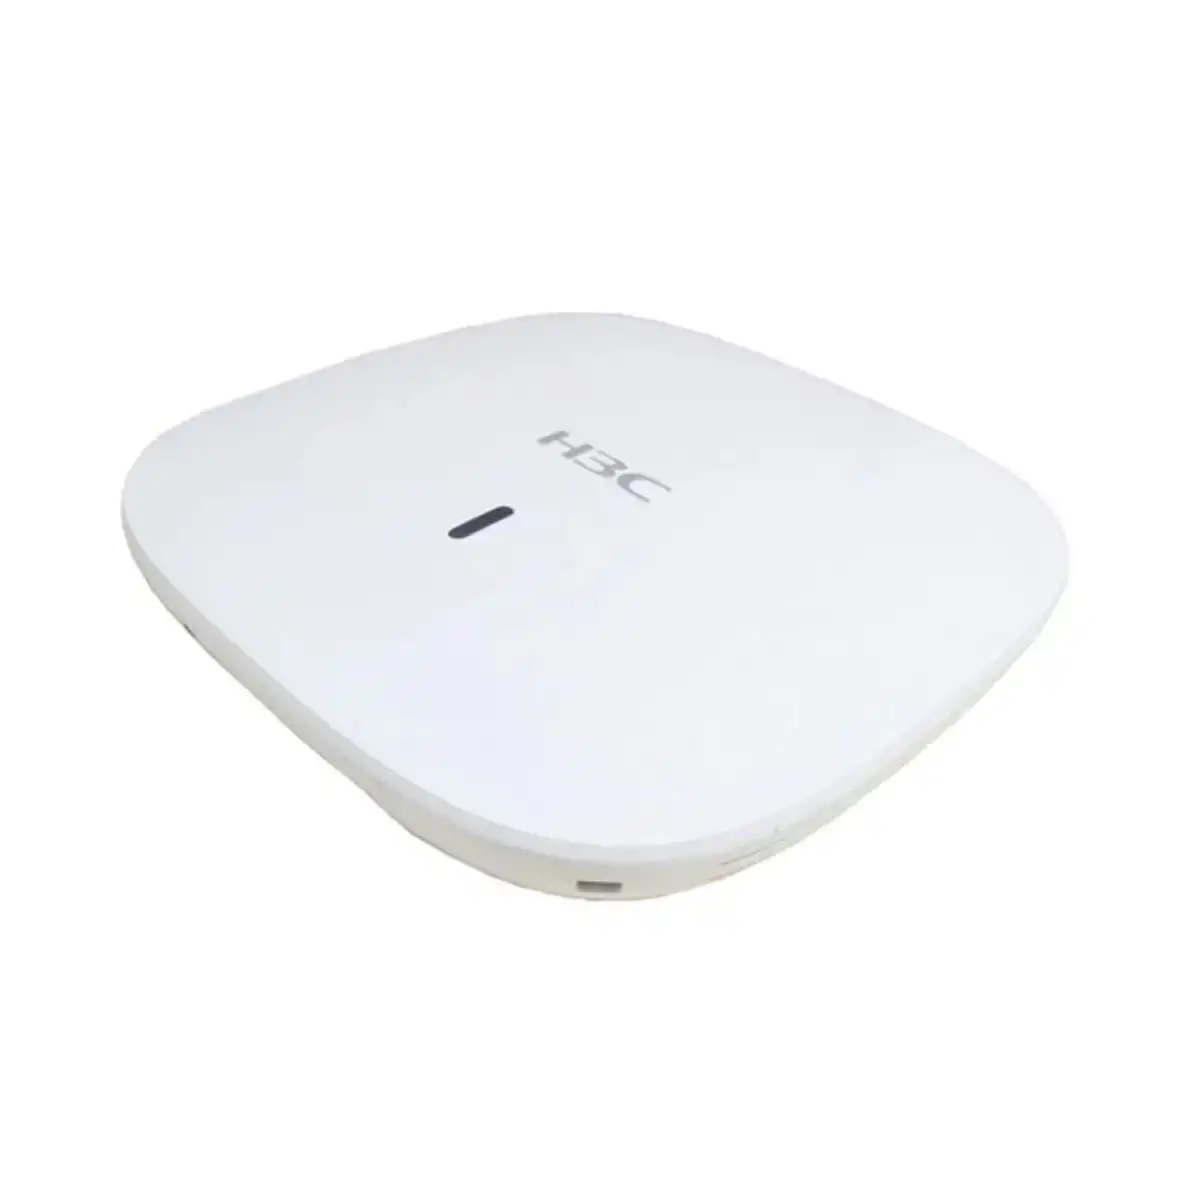 Thiết bị phát wifi H3C WA6320 tốc độ 3,6Gbps, kết nối 512 người dùng, 16SSID, công nghệ MU-MIMO